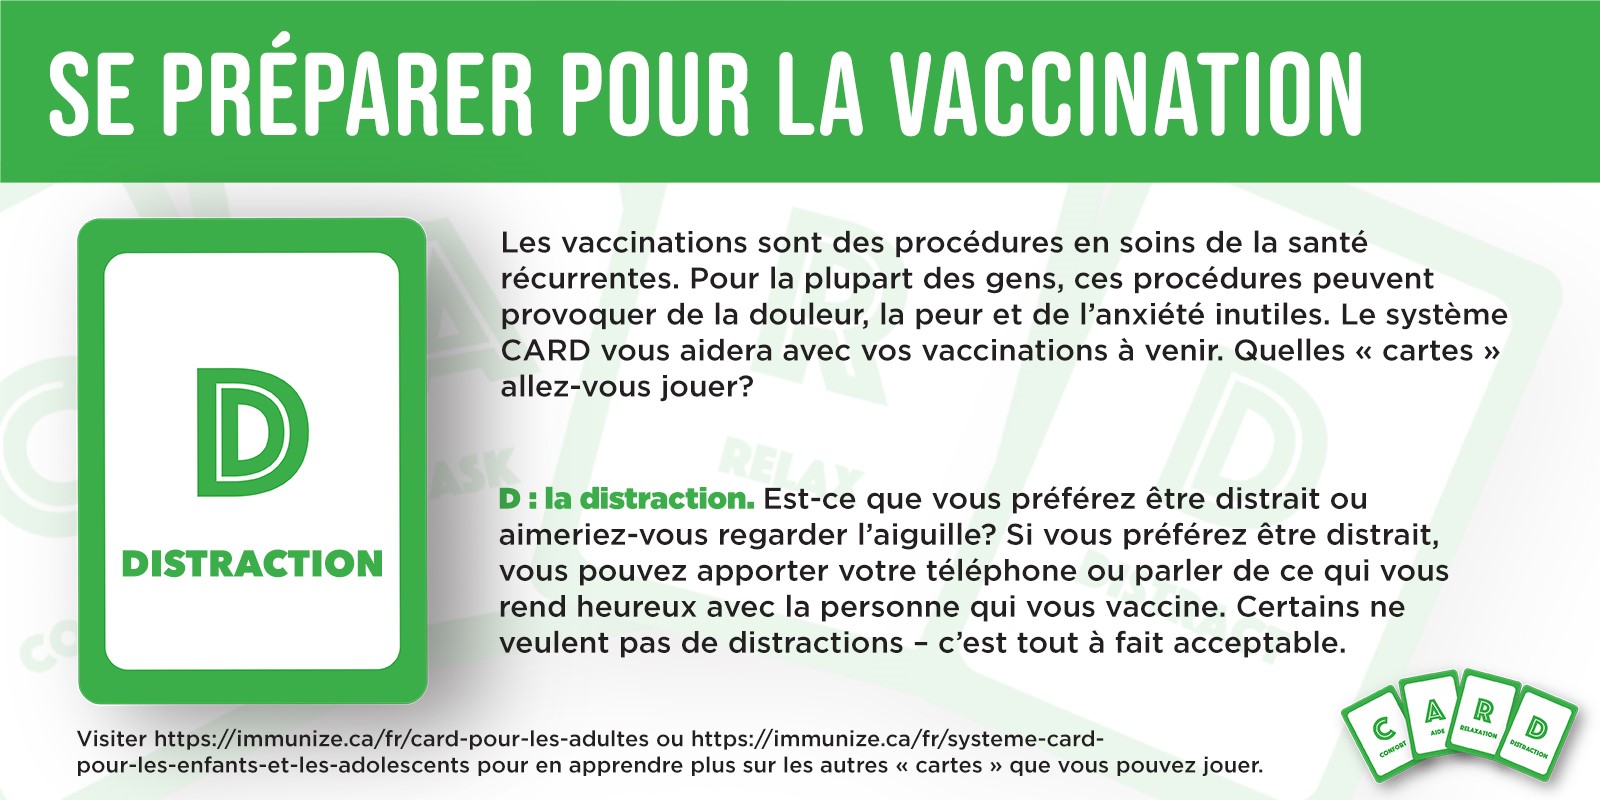 Se préparer pour la vaccination : Distraction